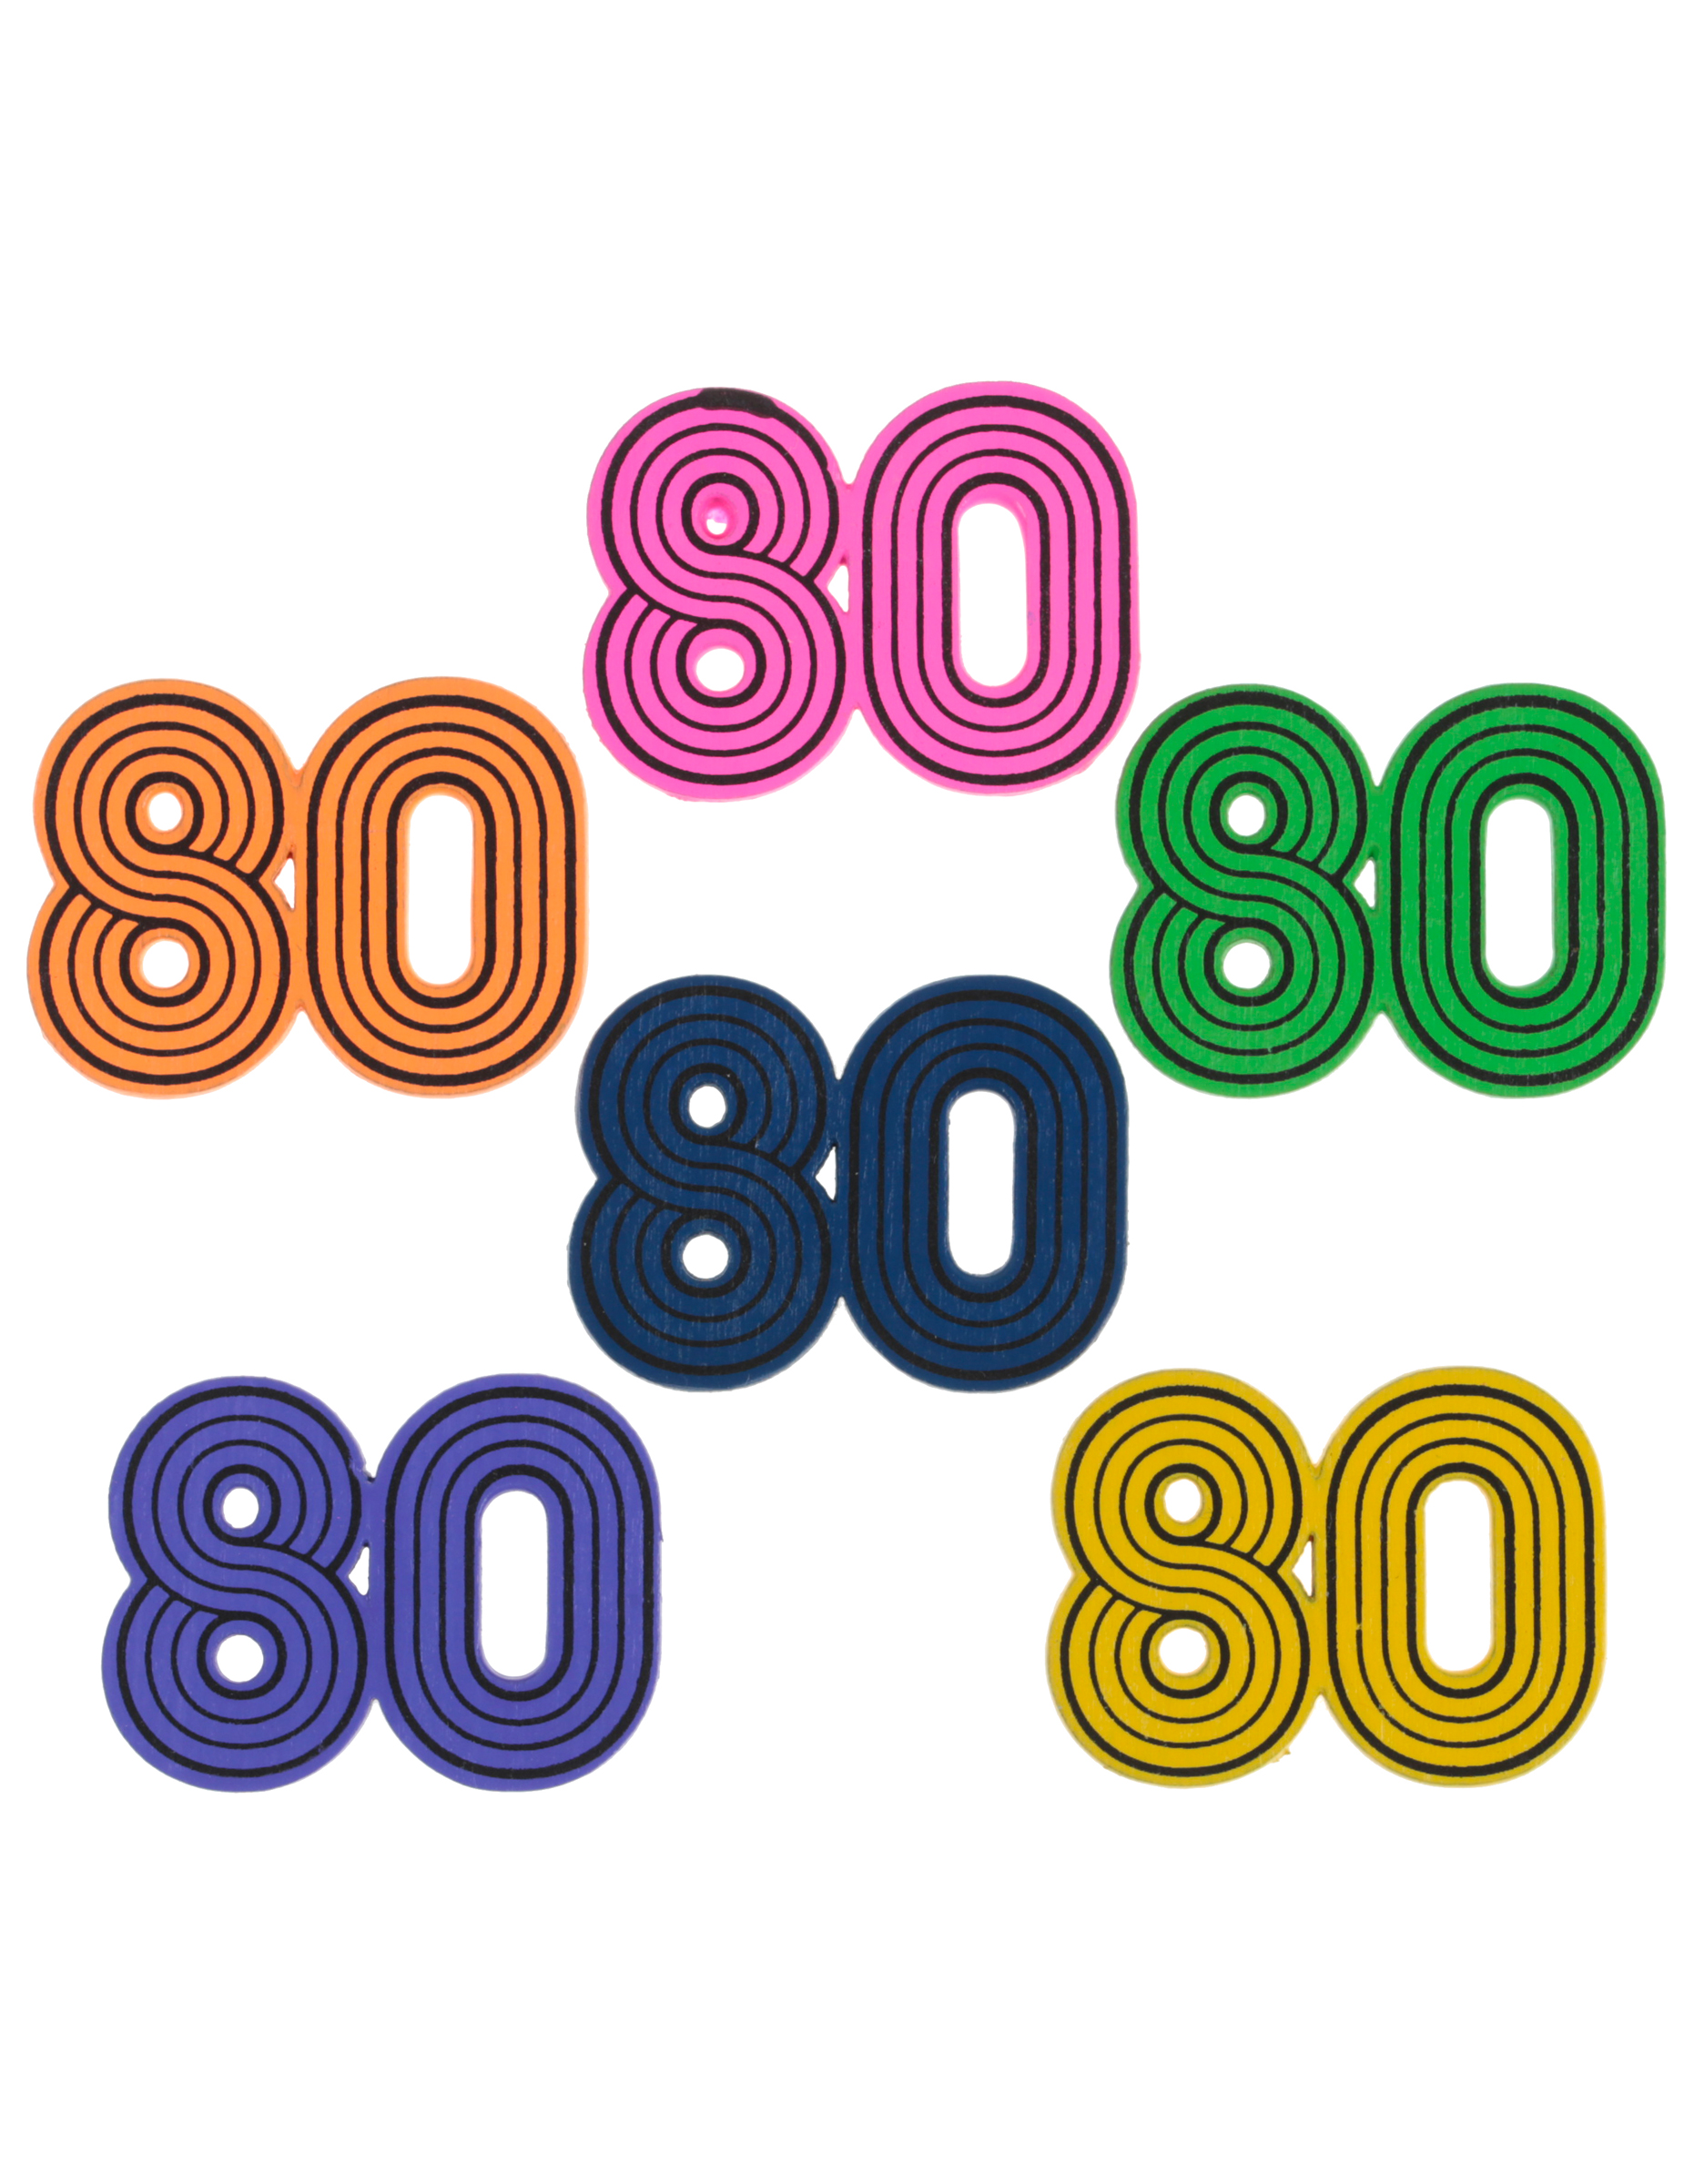 Streuteile 80 für Geburtstag oder 80er-Mottoparty 10 Stückbunt von SANTEX